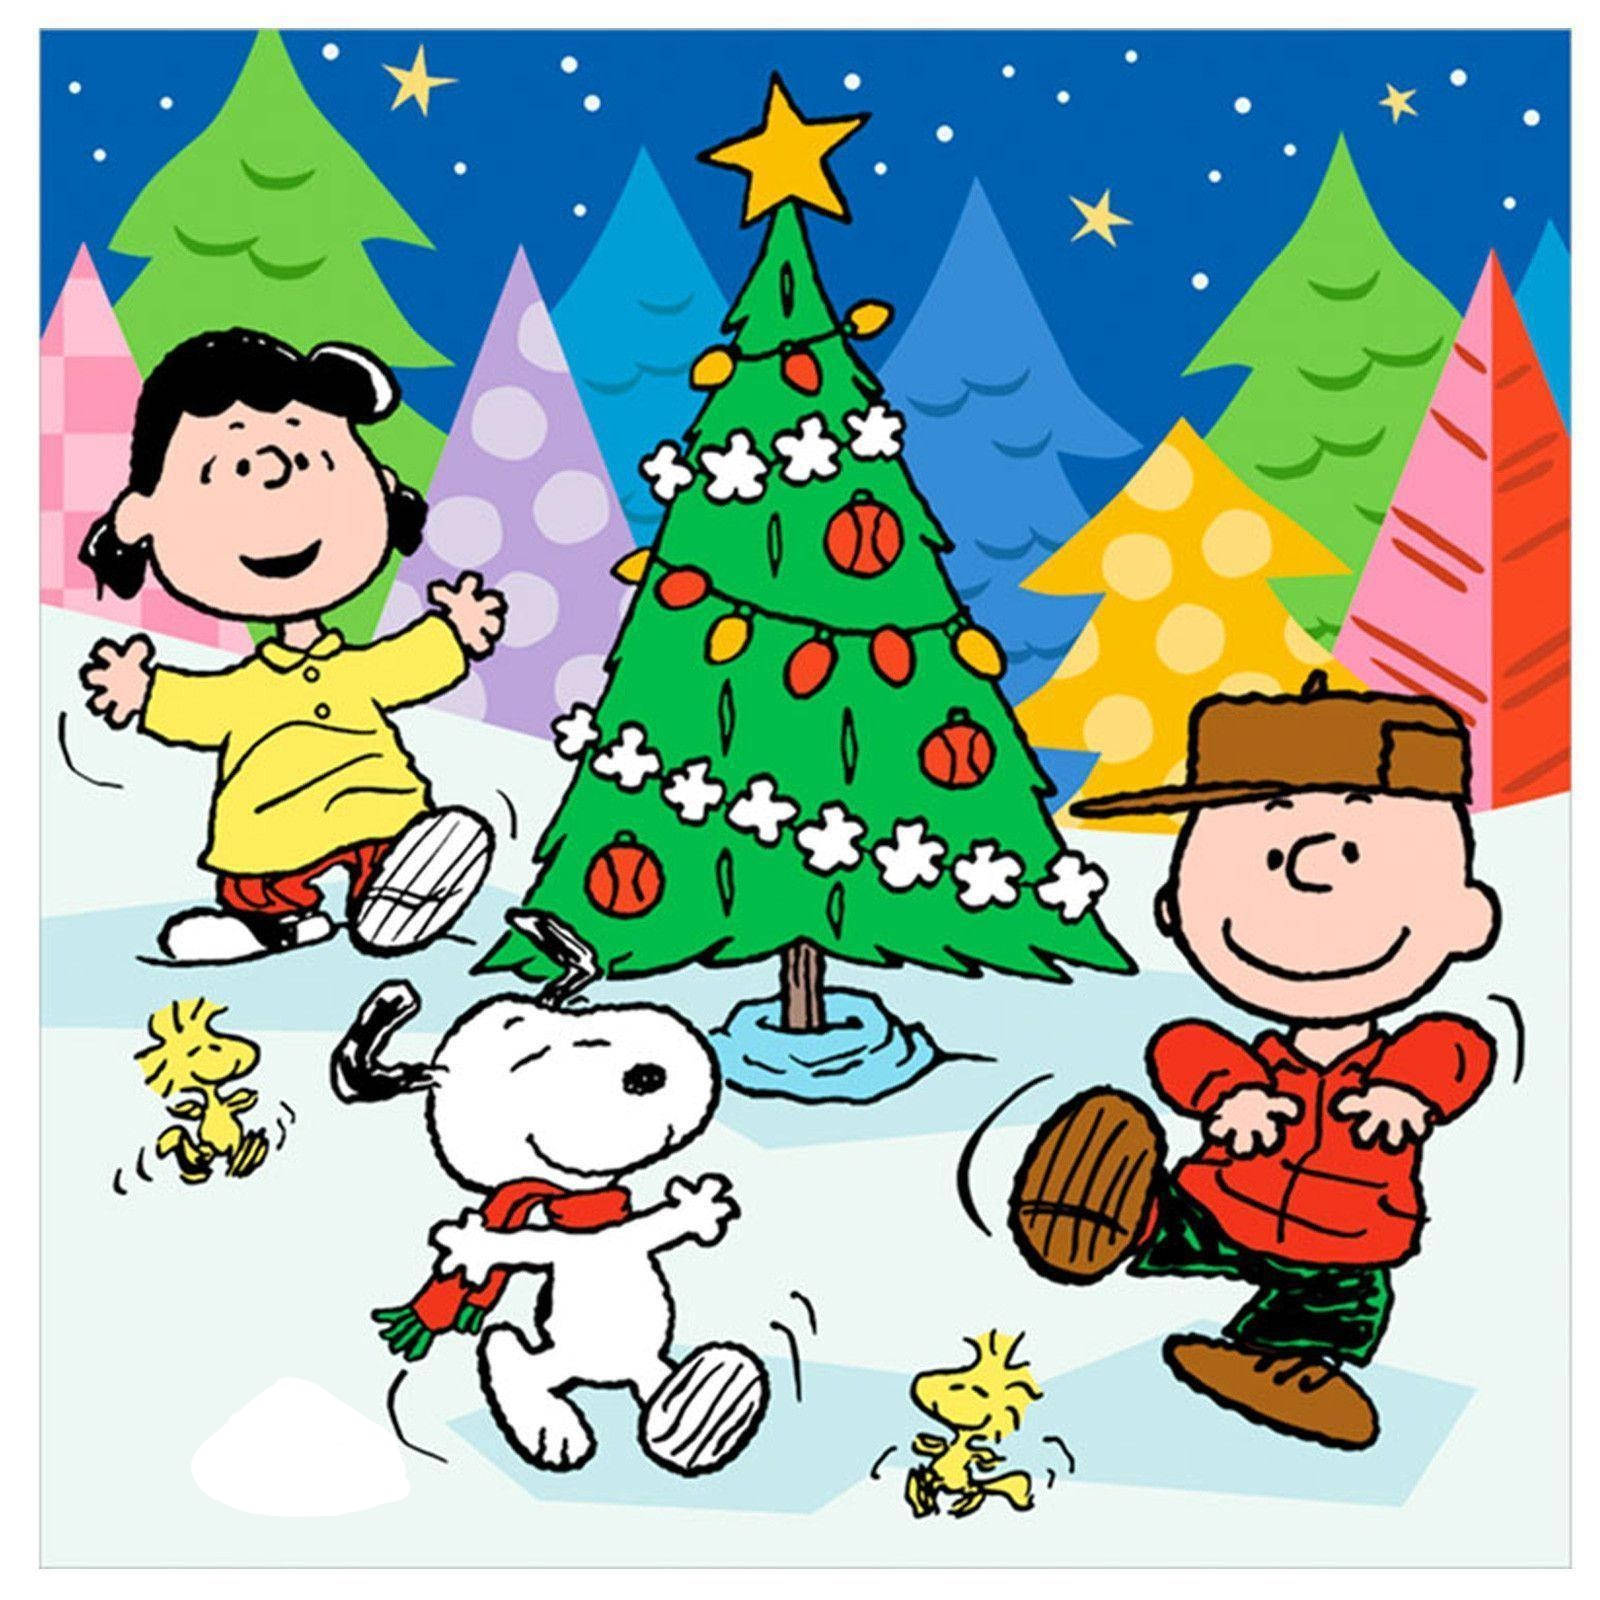 Lassensie Sich Mit Diesem Festlichen Snoopy Weihnachts-hintergrundbild Für Das Iphone In Weihnachtsstimmung Versetzen. Wallpaper